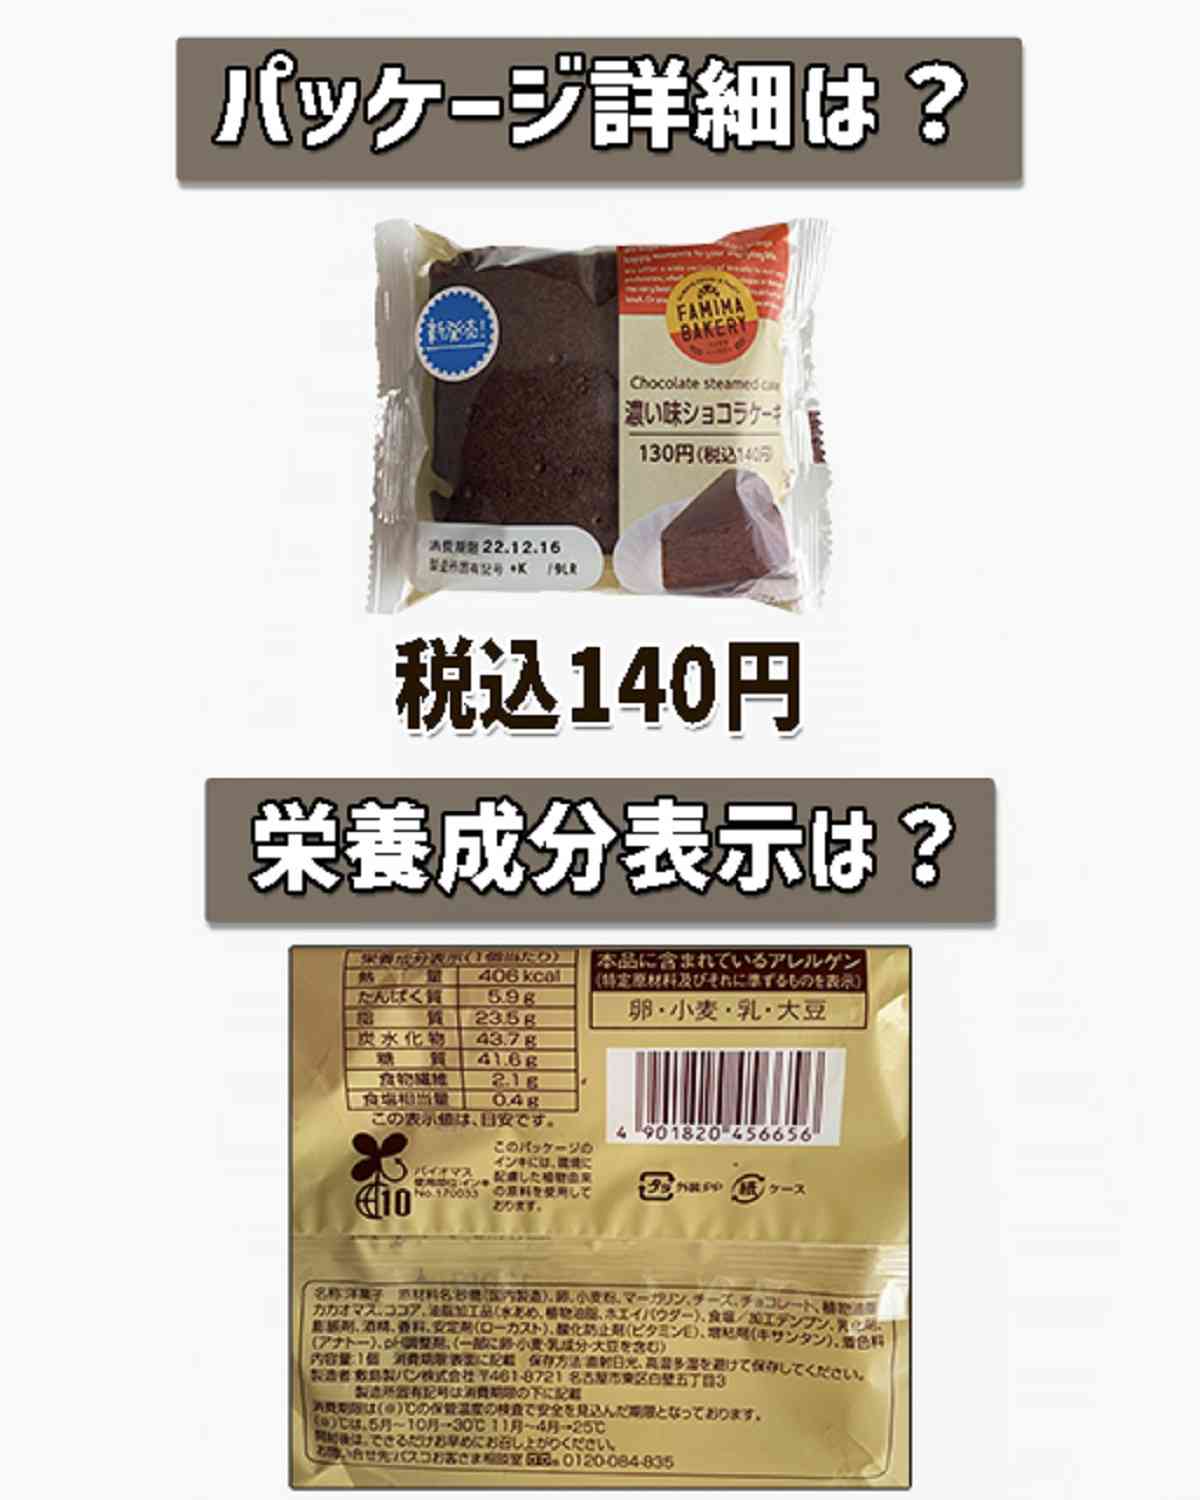 ファミリーマート「濃い味ショコラケーキ」